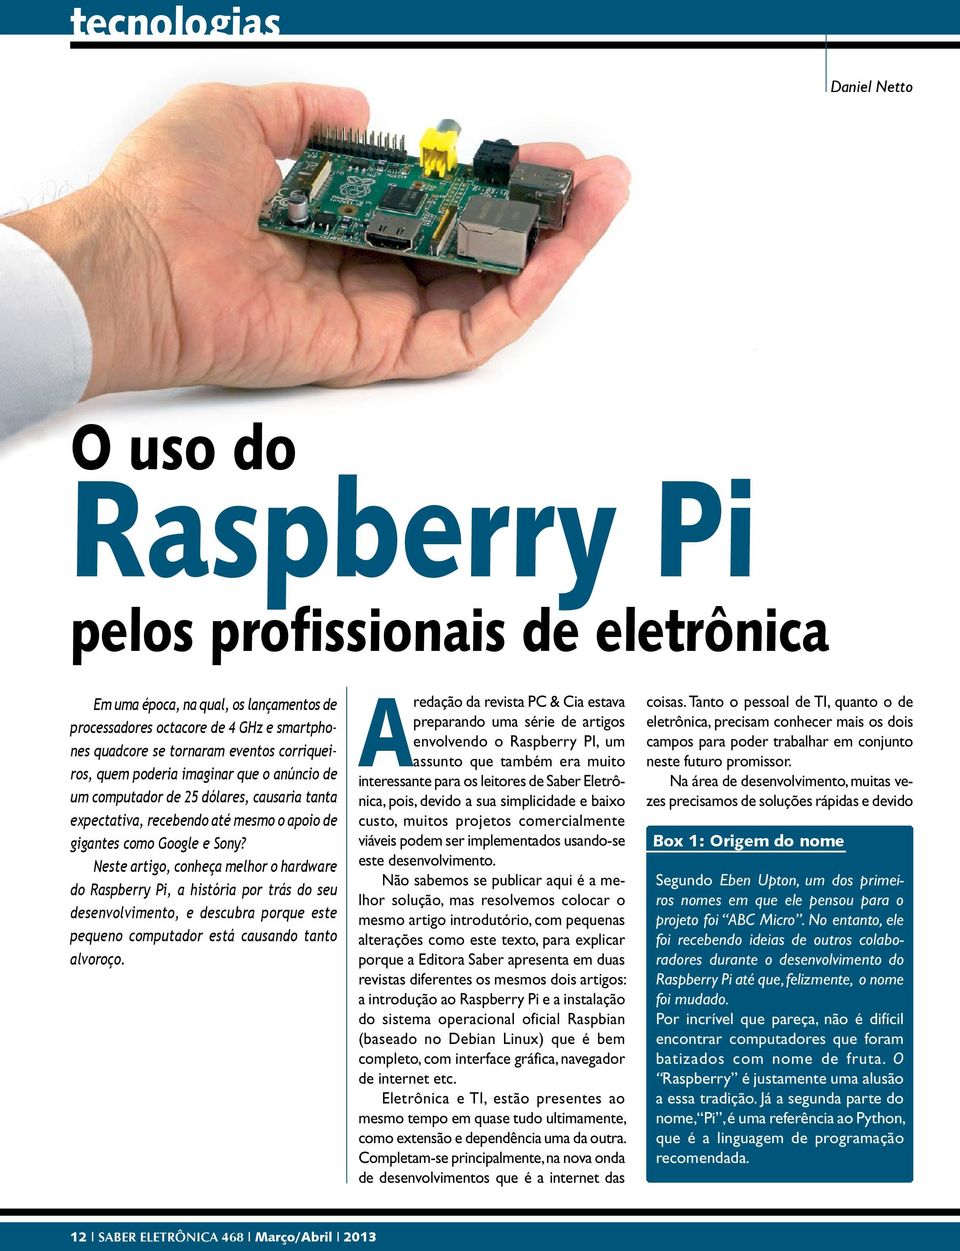 Neste artigo, conheça melhor o hardware do Raspberry Pi, a história por trás do seu desenvolvimento, e descubra porque este pequeno computador está causando tanto alvoroço.